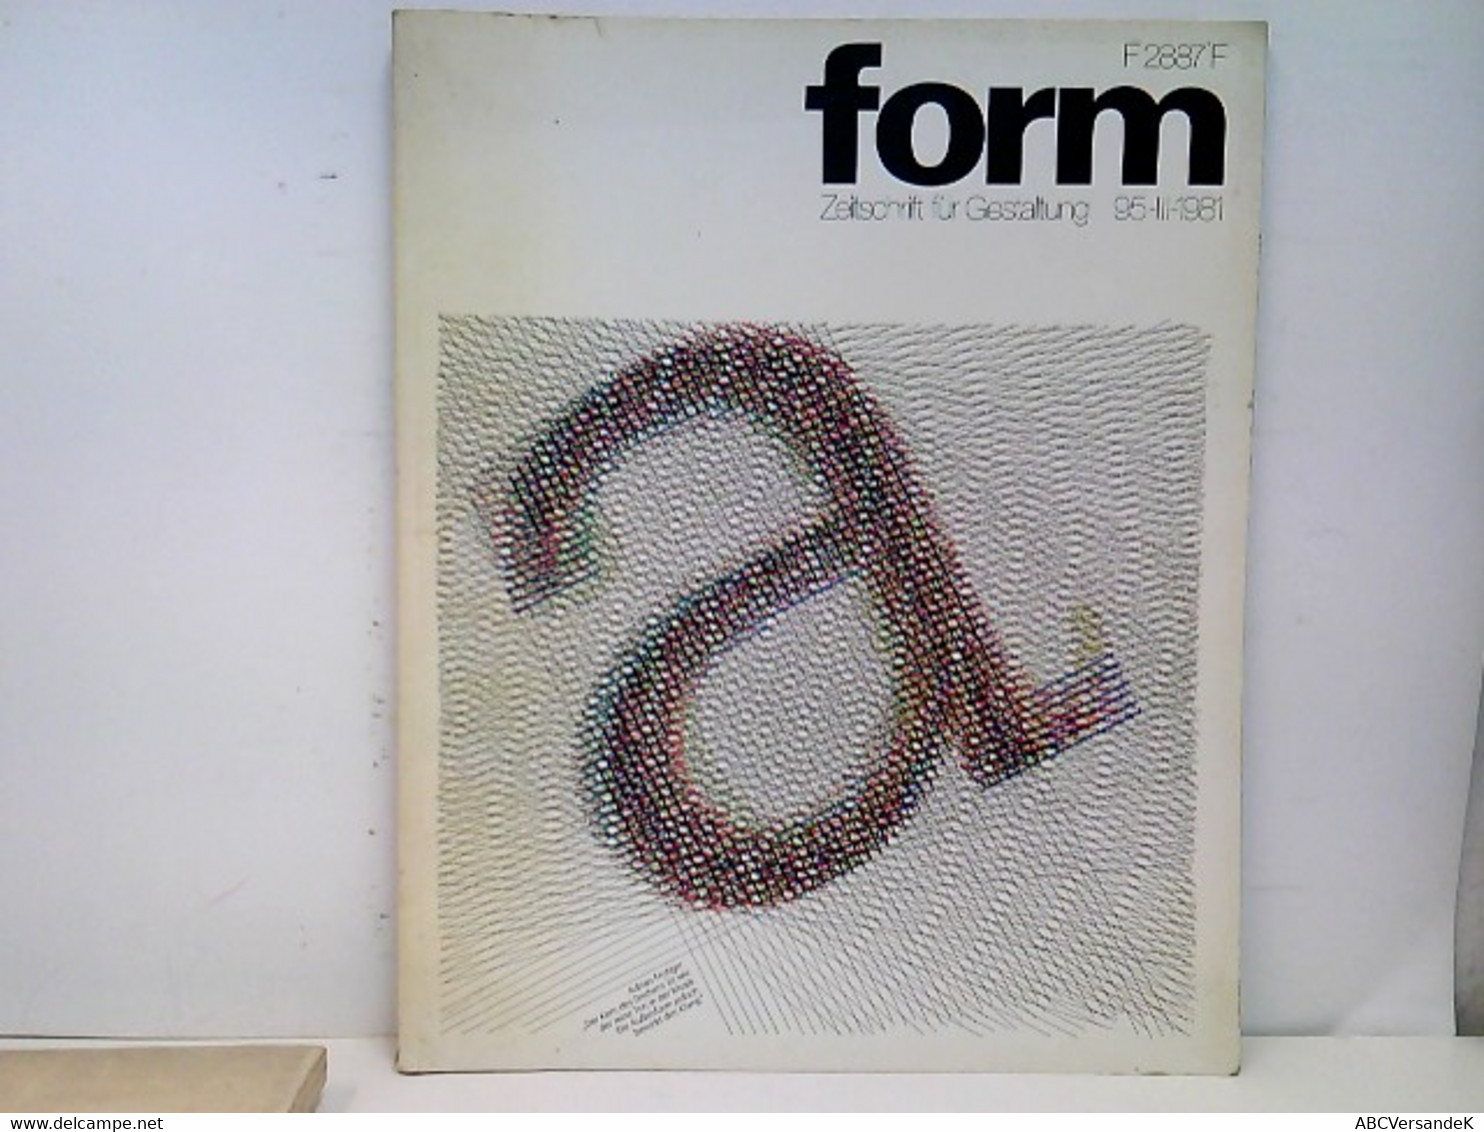 Form. Zeitschrift Für Gestaltung. Heft 95-III-1981. - Graphism & Design